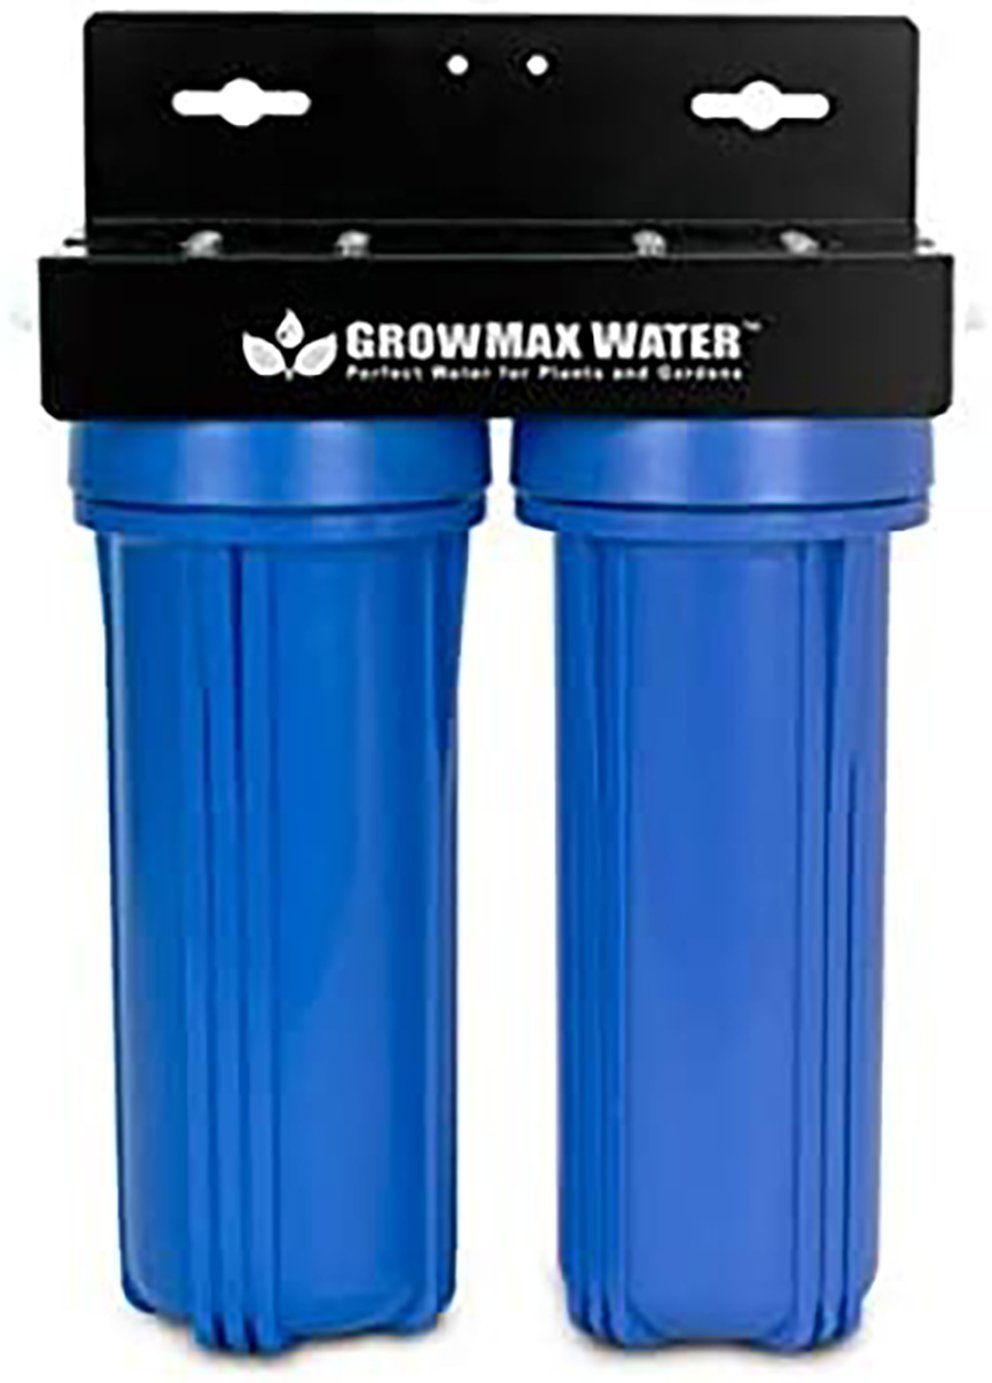 Weedness Wasserfilter Wasser-Filter-Anlage Trinkwasser Wasserfilter Filteranlage Aquarium